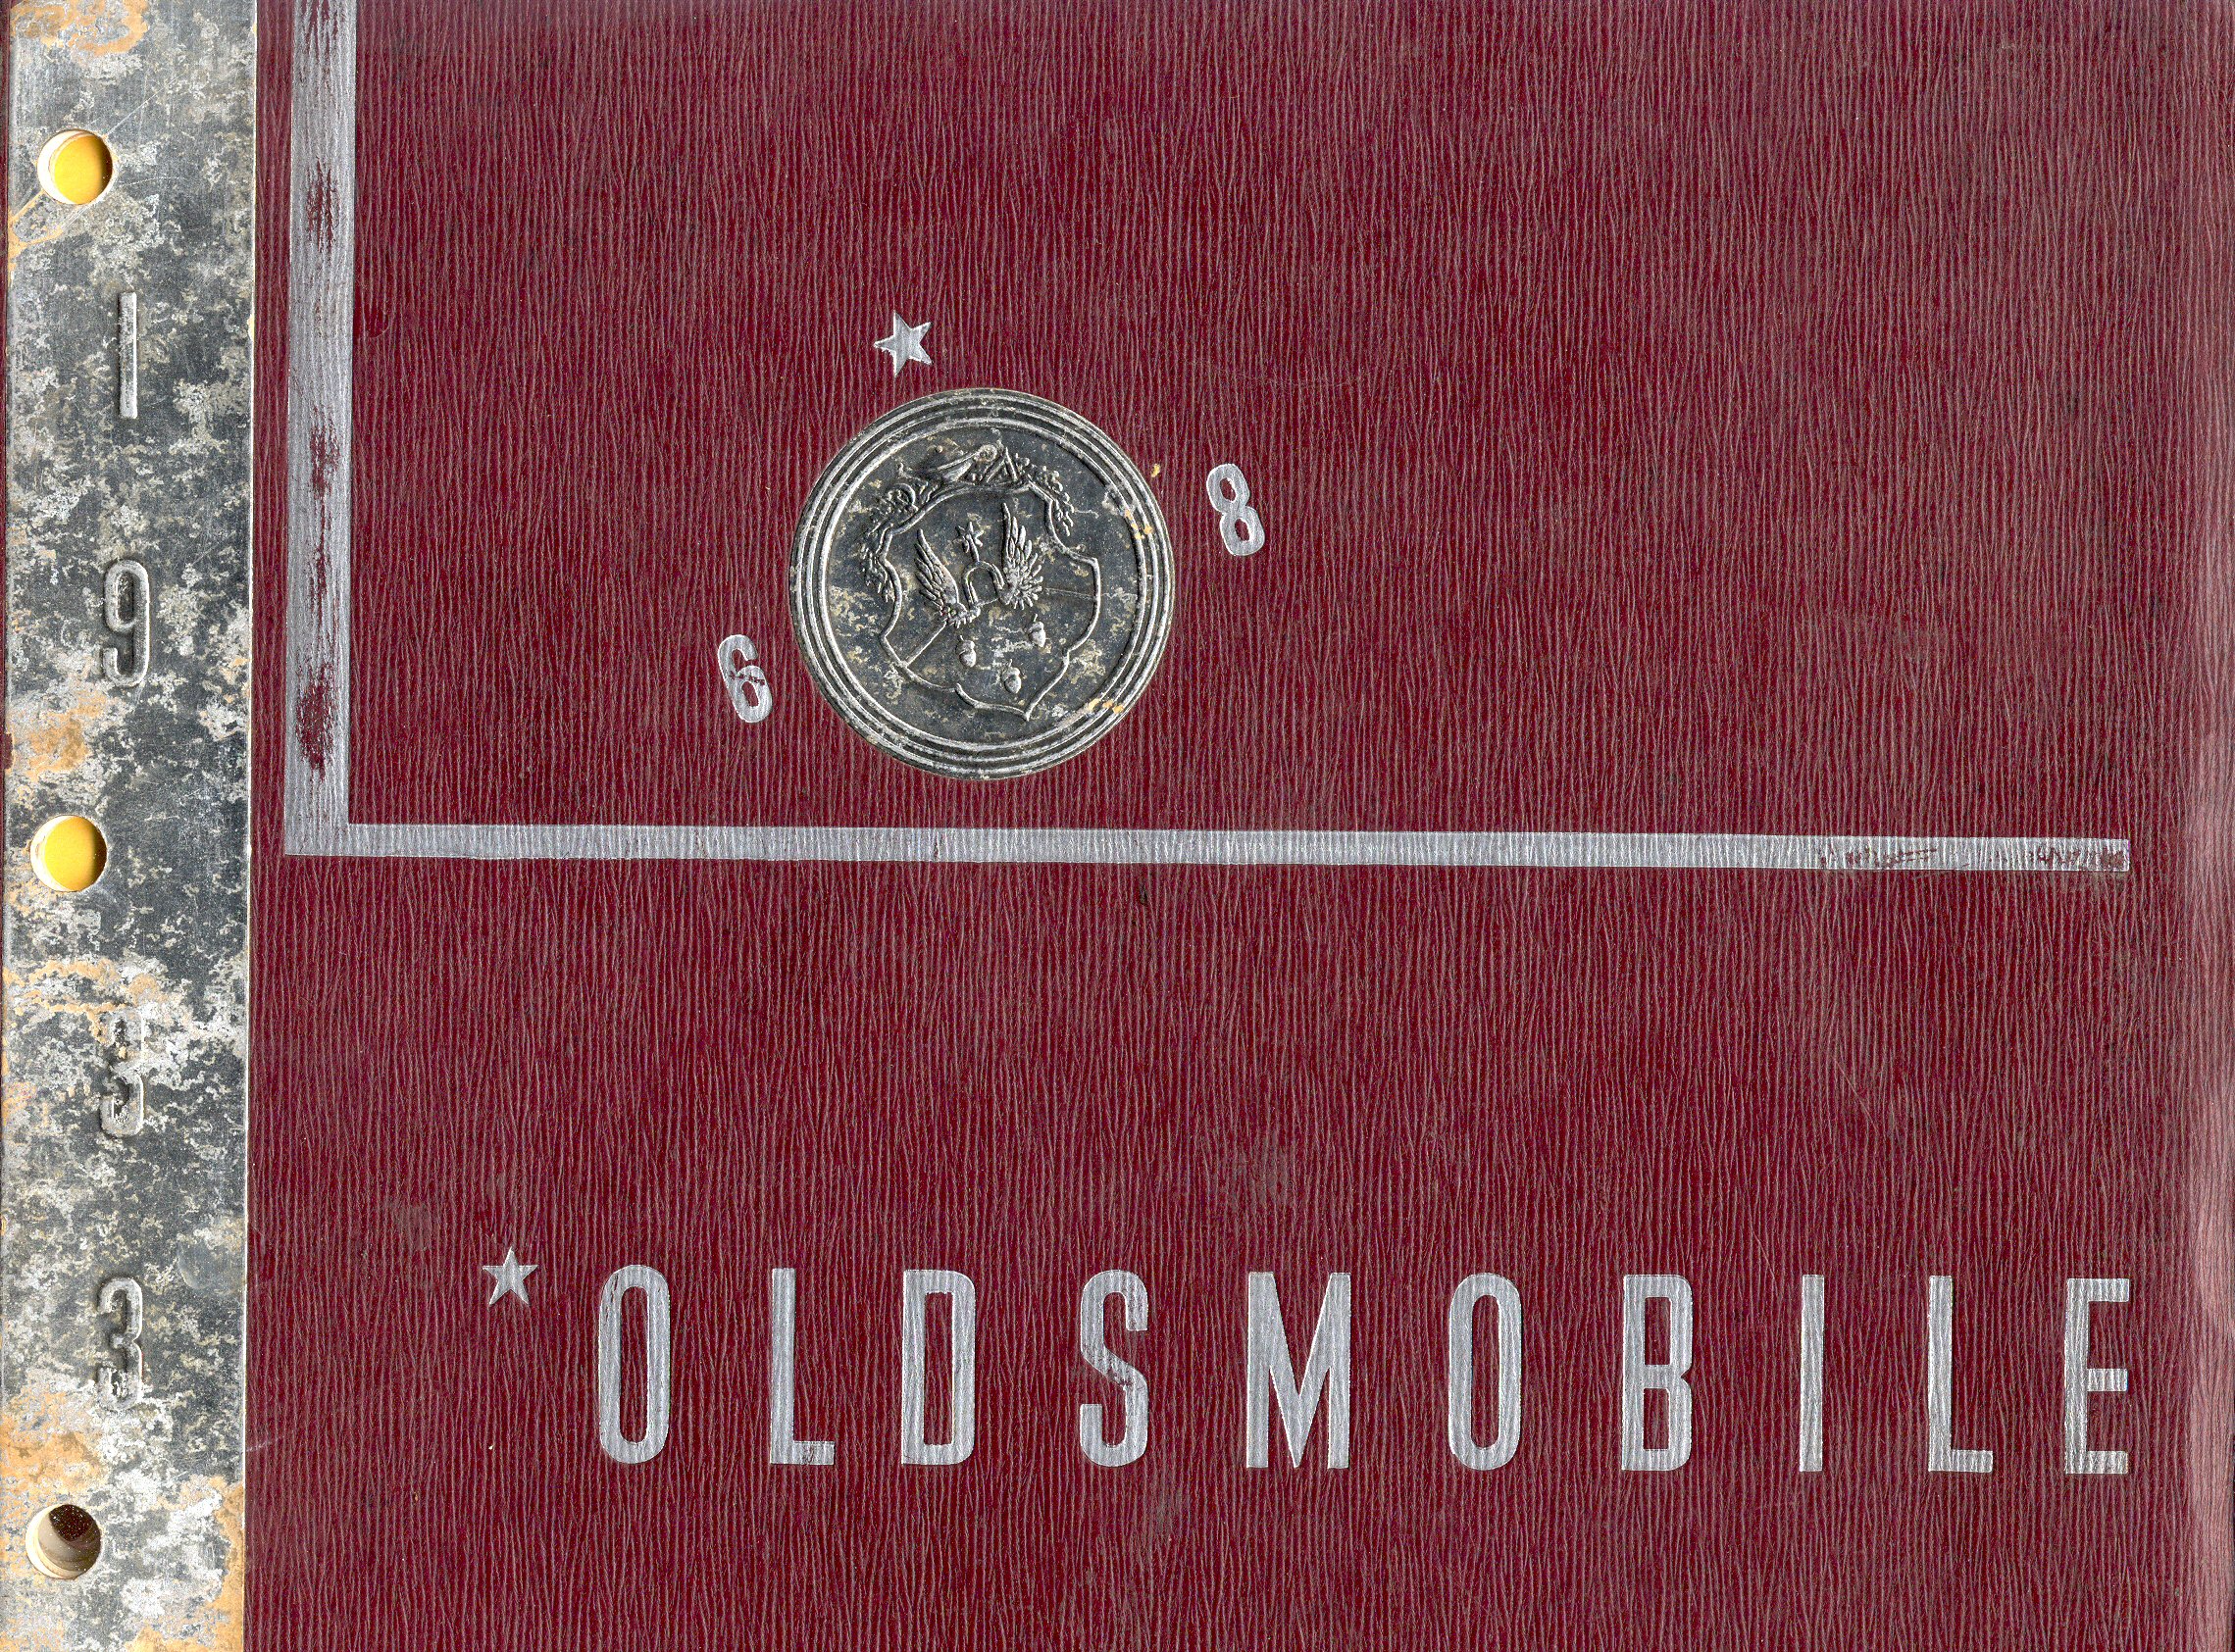 1933 Oldsmobile Booklet